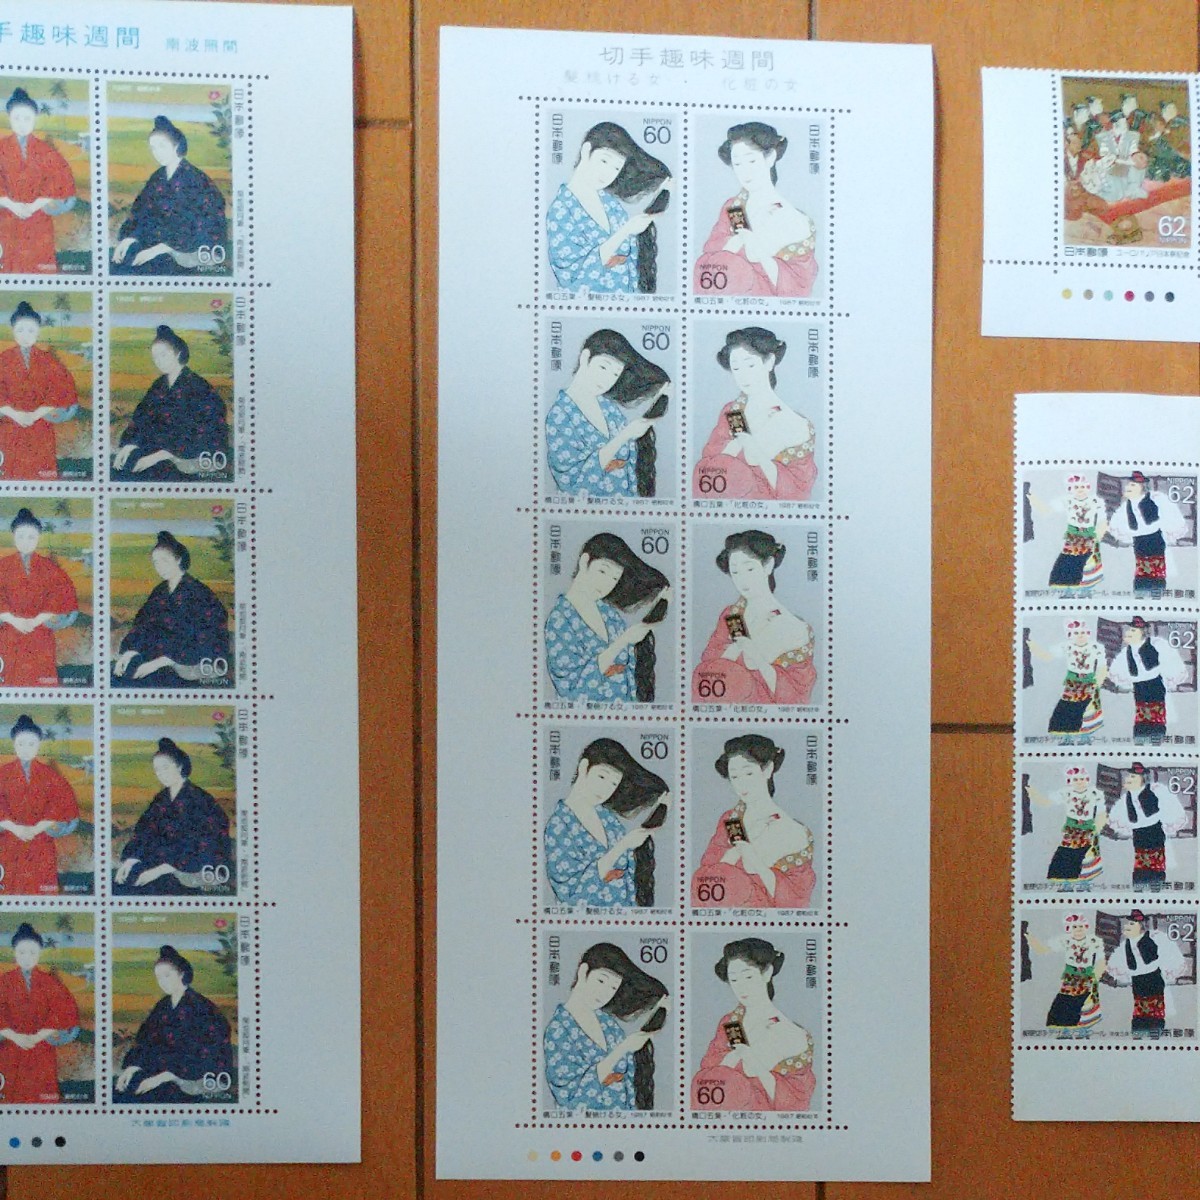 切手 いろいろ アソート セット 切手趣味週間 奥の細道シリーズ 他 切手シート 